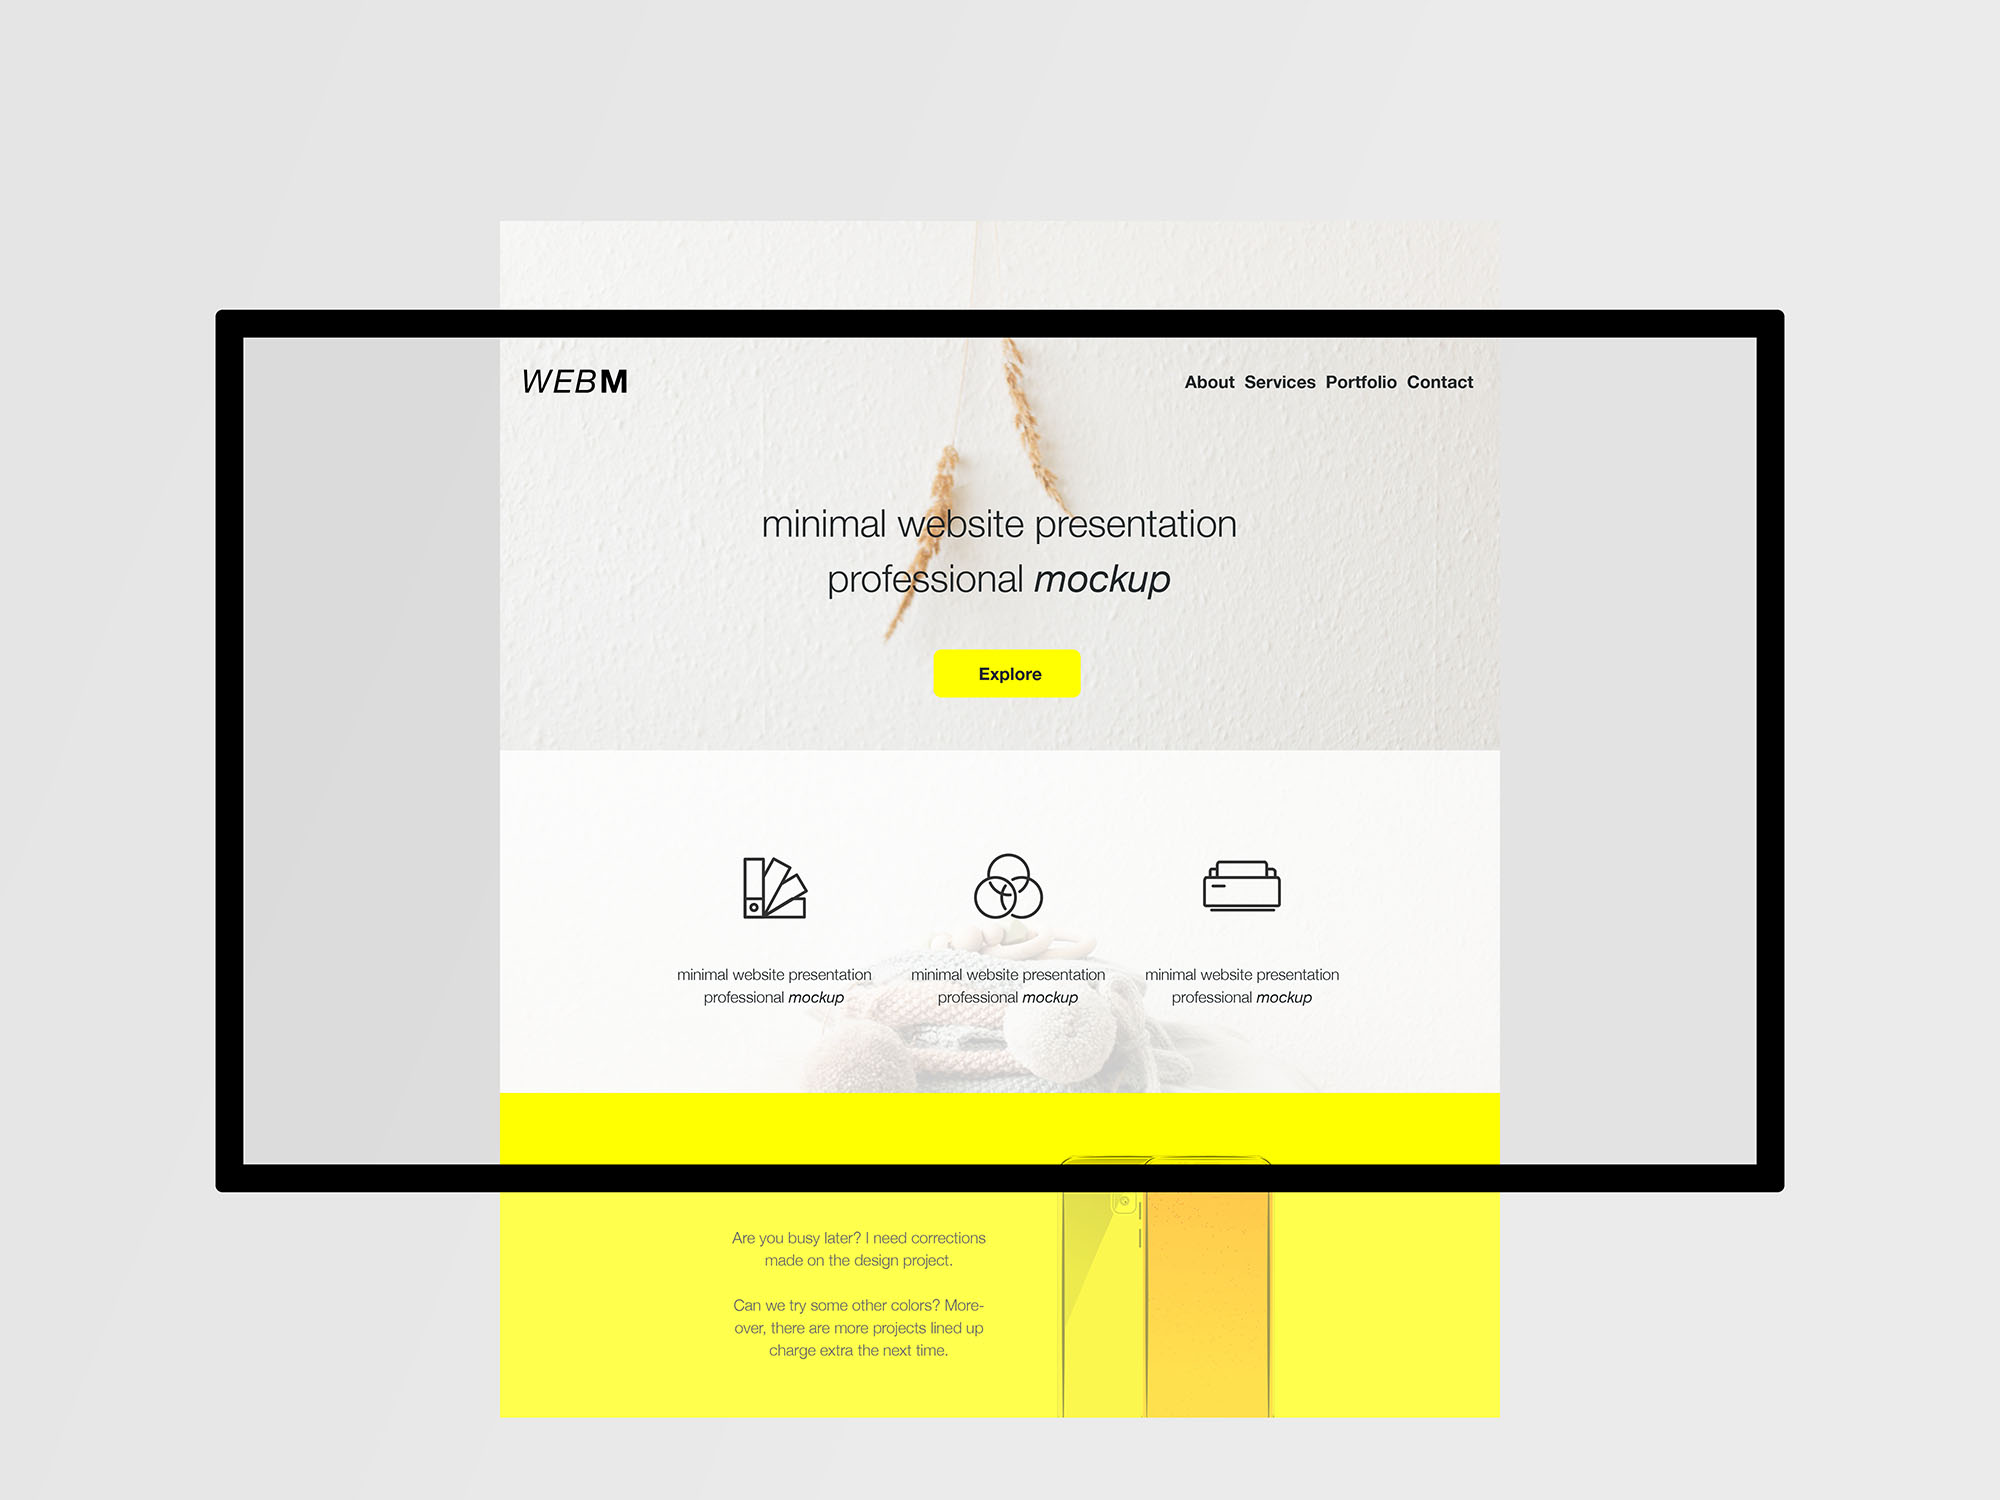 极简主义设计风格扁平化网站设计效果预览样机模板 Minimal Flat Website Presentation Mockup插图